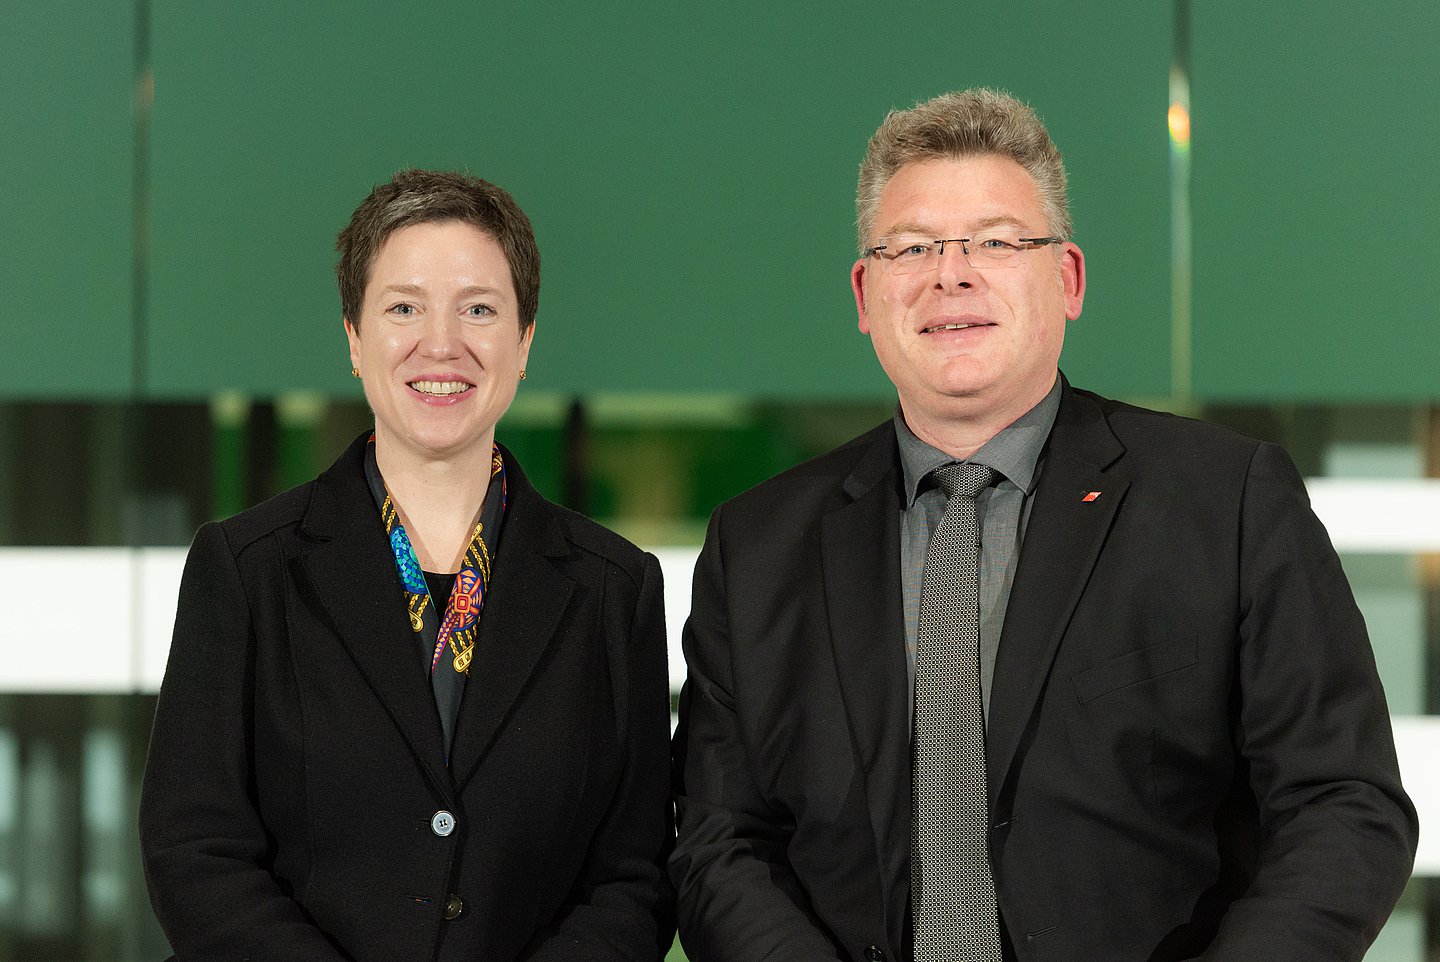 Foto zeigt Dr. Susanne Wagenmann links mit brünettem Kurzhaarschnitt und bunter Bluse. Rechts im Bild Knut Lambertin mit Brille und graumelierten kurzen Haaren. Knut Lambertin trägt ein graues Hemd mit grauer Krawatte. Beide tragen ein schwarzes Sakko.